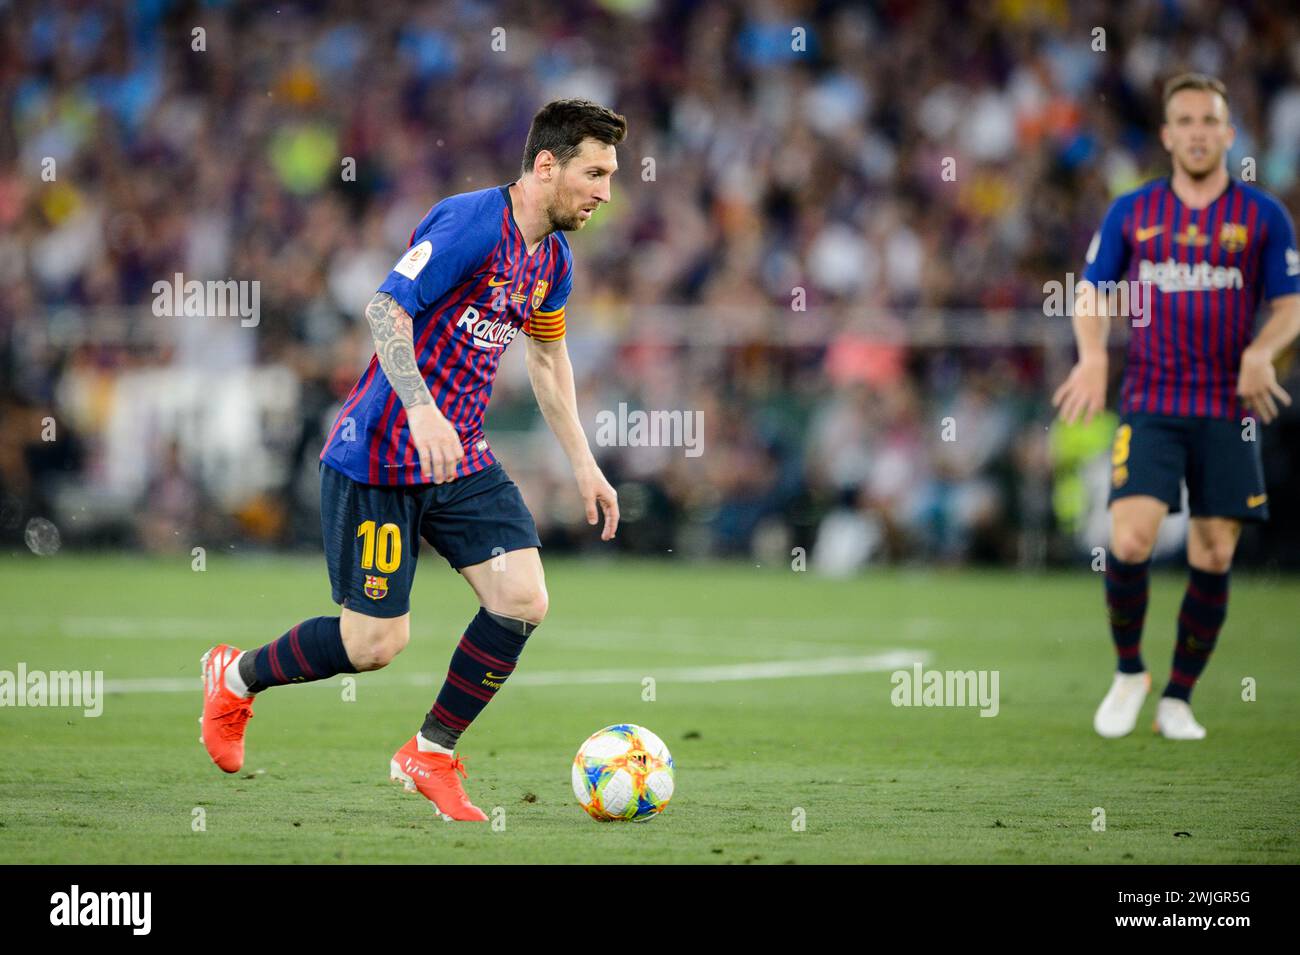 Leo messi, giocatore del FC Barcelona, in azione con la palla ai suoi piedi durante la finale di Coppa del Rey a Siviglia, Spagna. Foto Stock